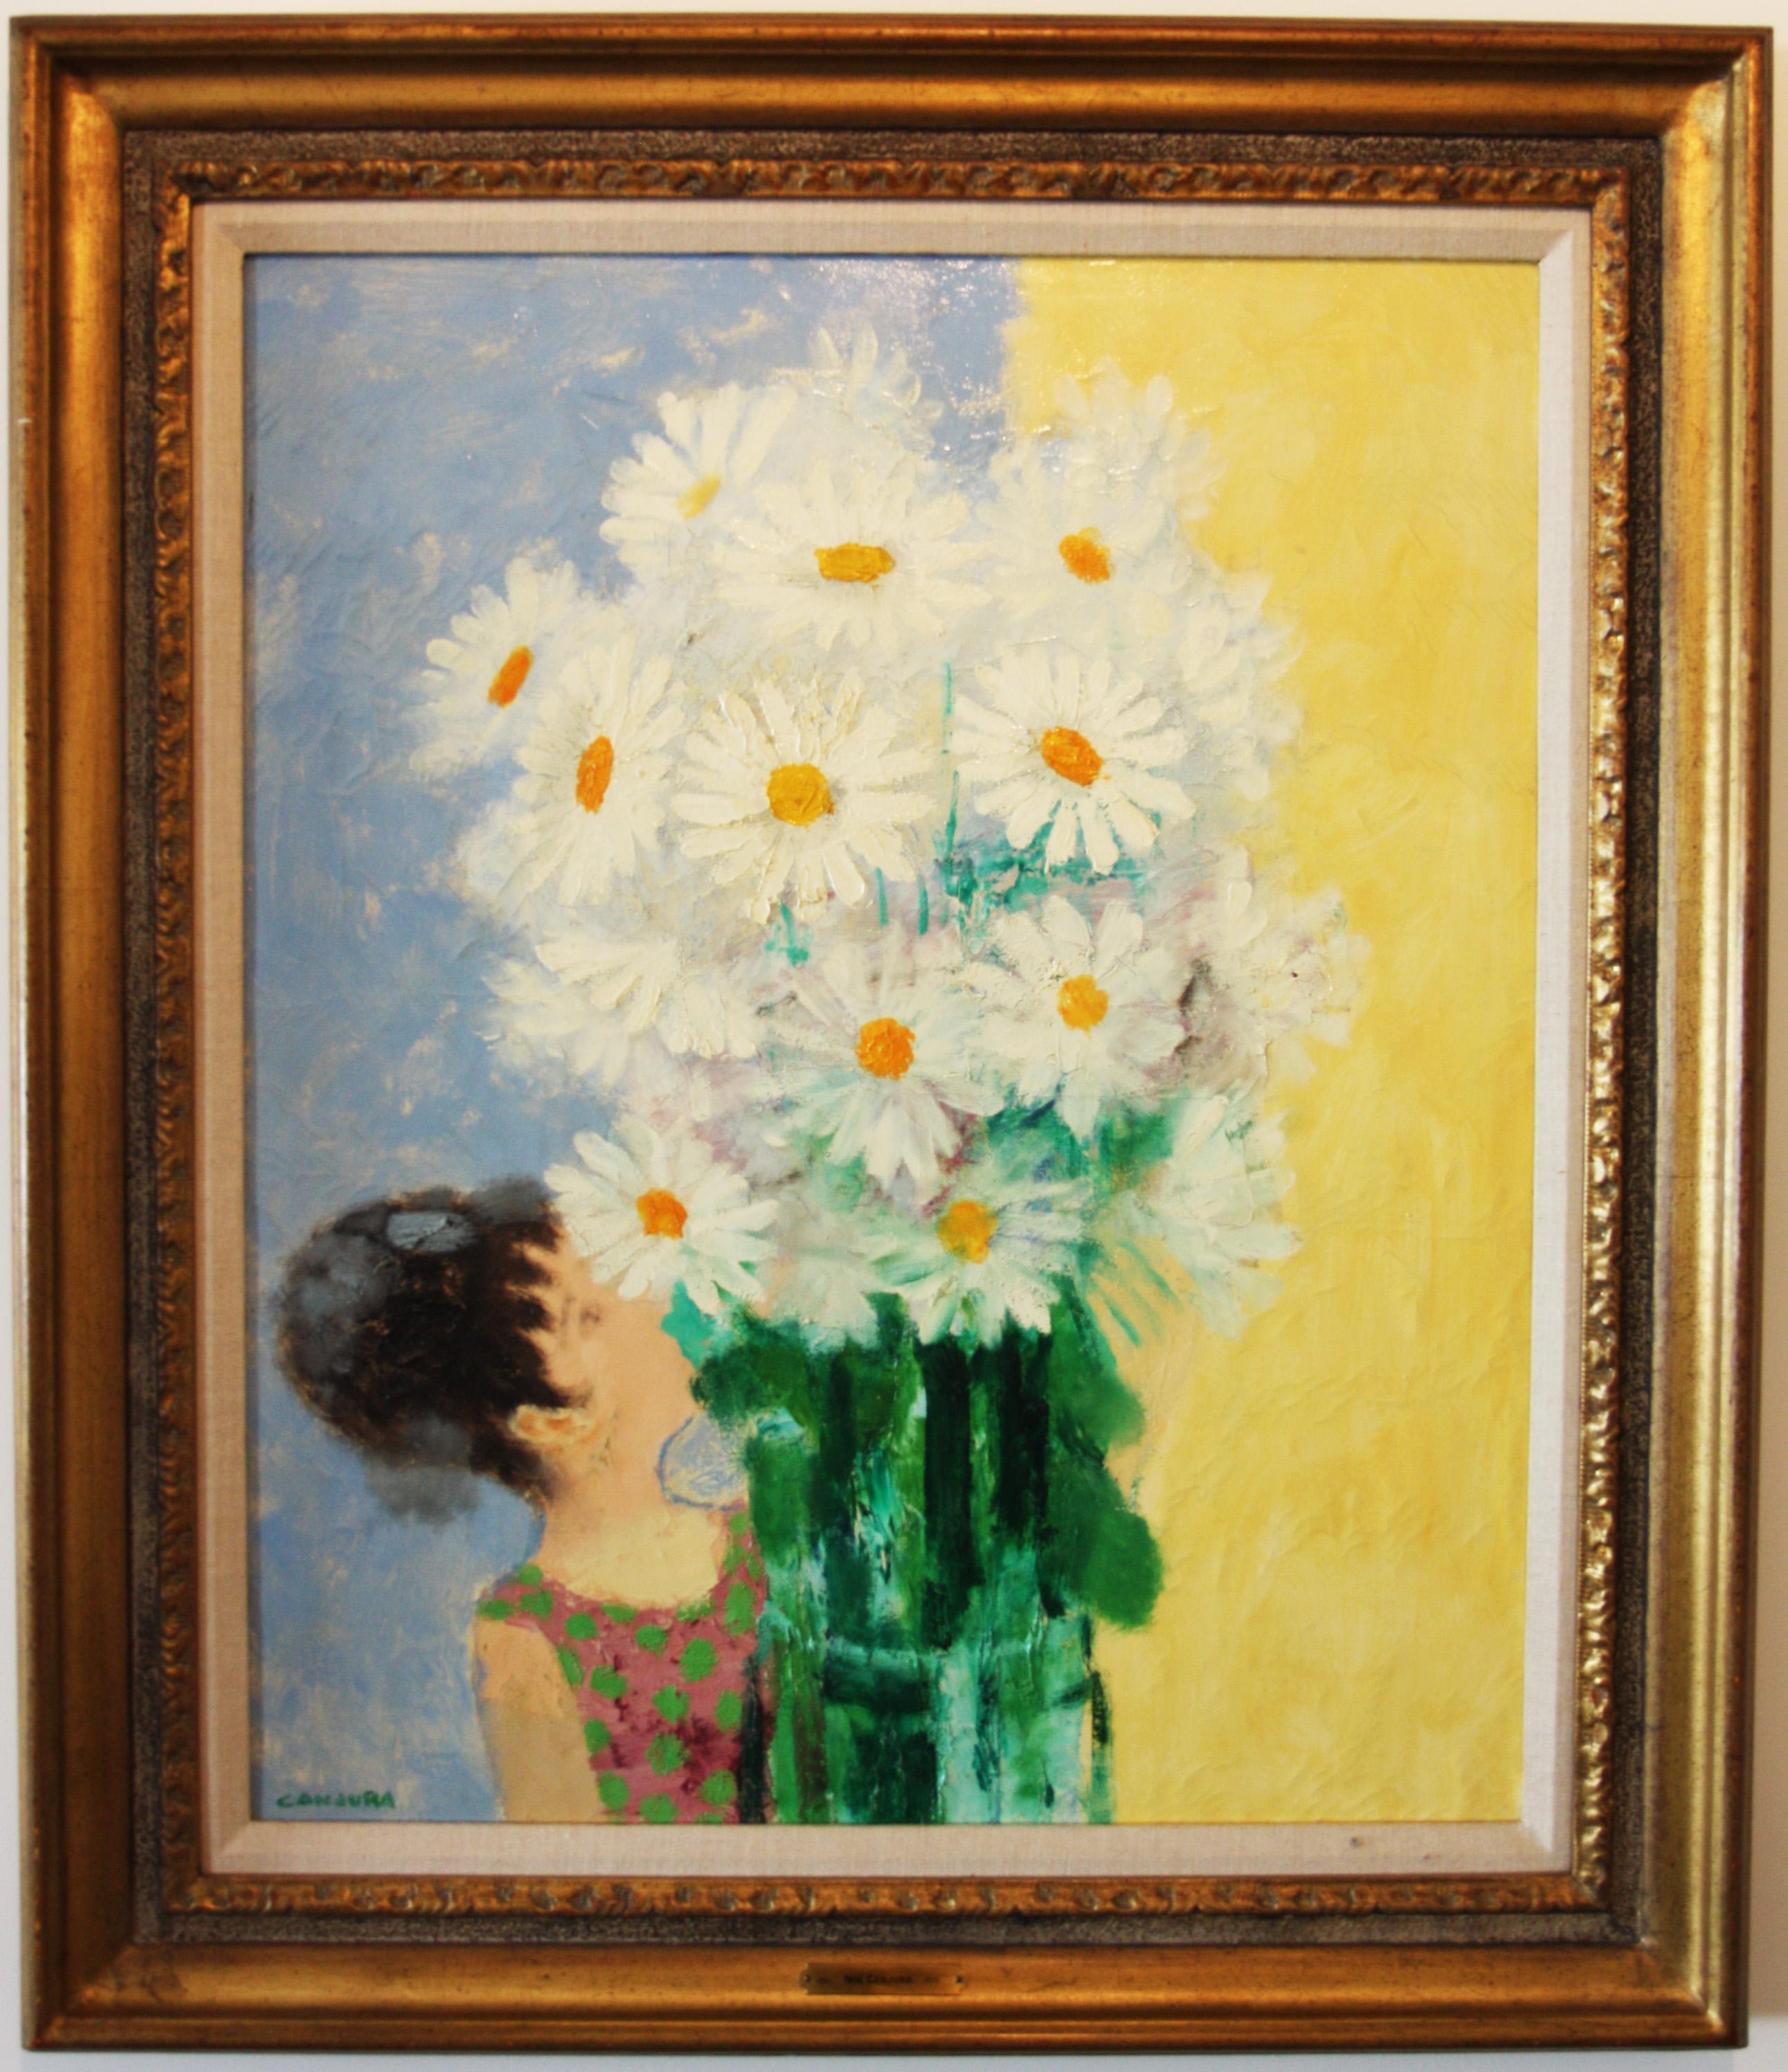 Peinture à l'huile de Noe Canjura (1922-1970) représentant une jeune femme tenant un bouquet de marguerites.  Signé dans le coin inférieur.  Né au Salvador mais formé en France à l'École nationale supérieure des Beaux-Arts, Noe Canjura est devenu